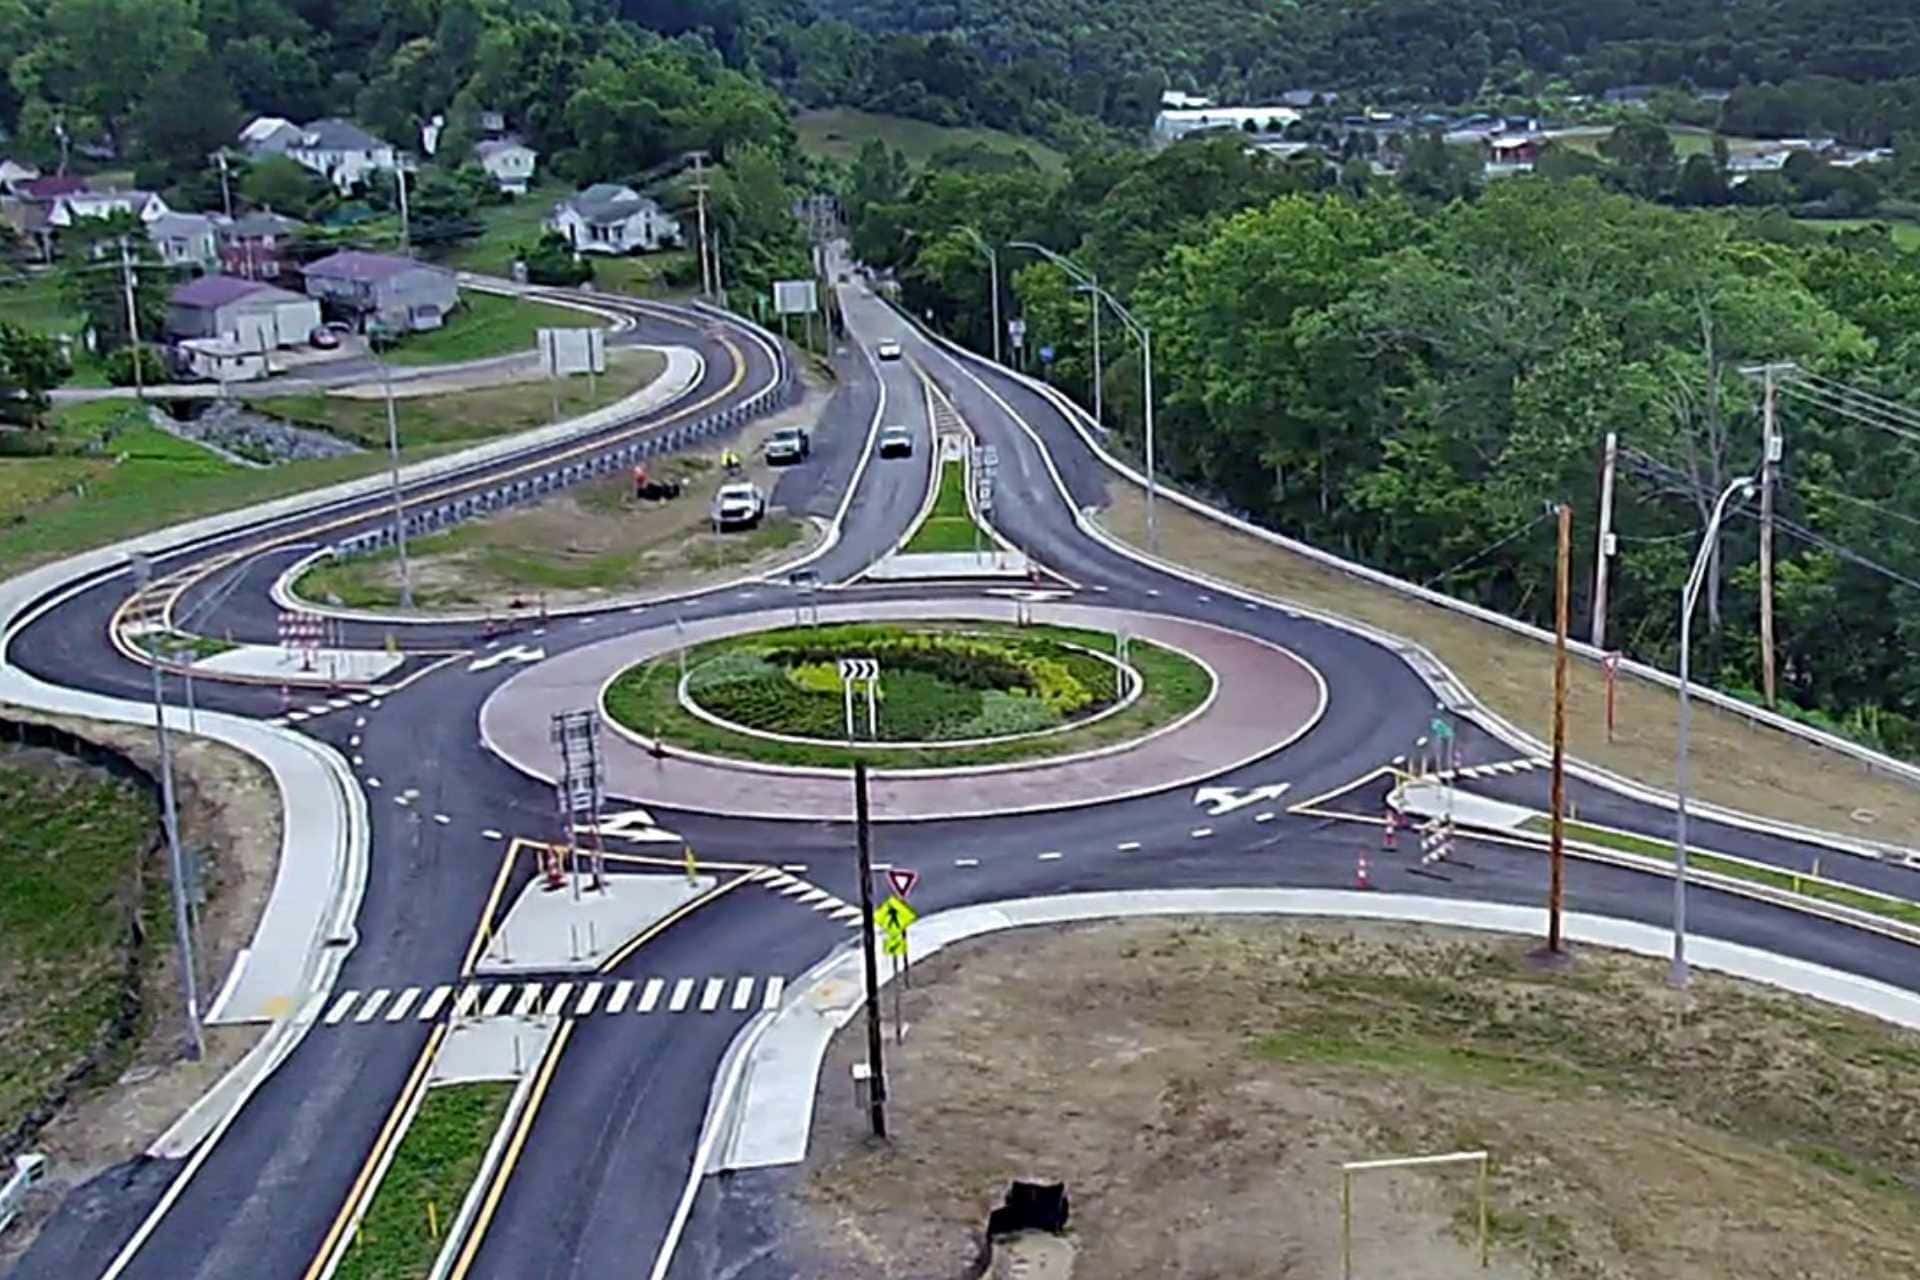 Glenville Roundabout